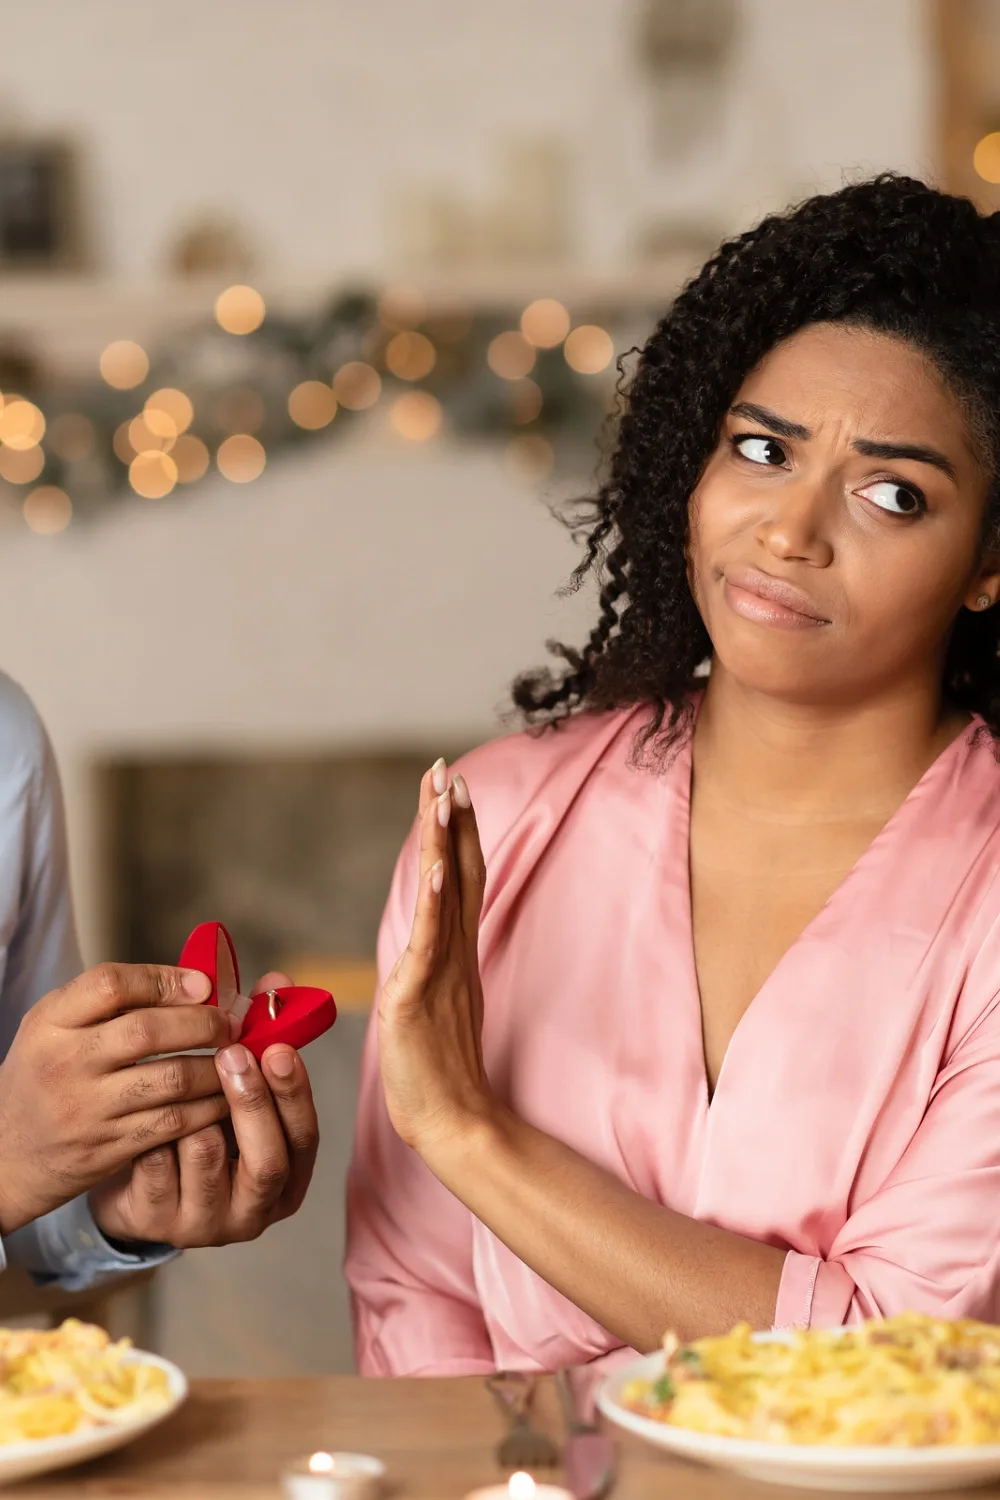 Why Does My Boyfriend Avoid Marriage Talk?